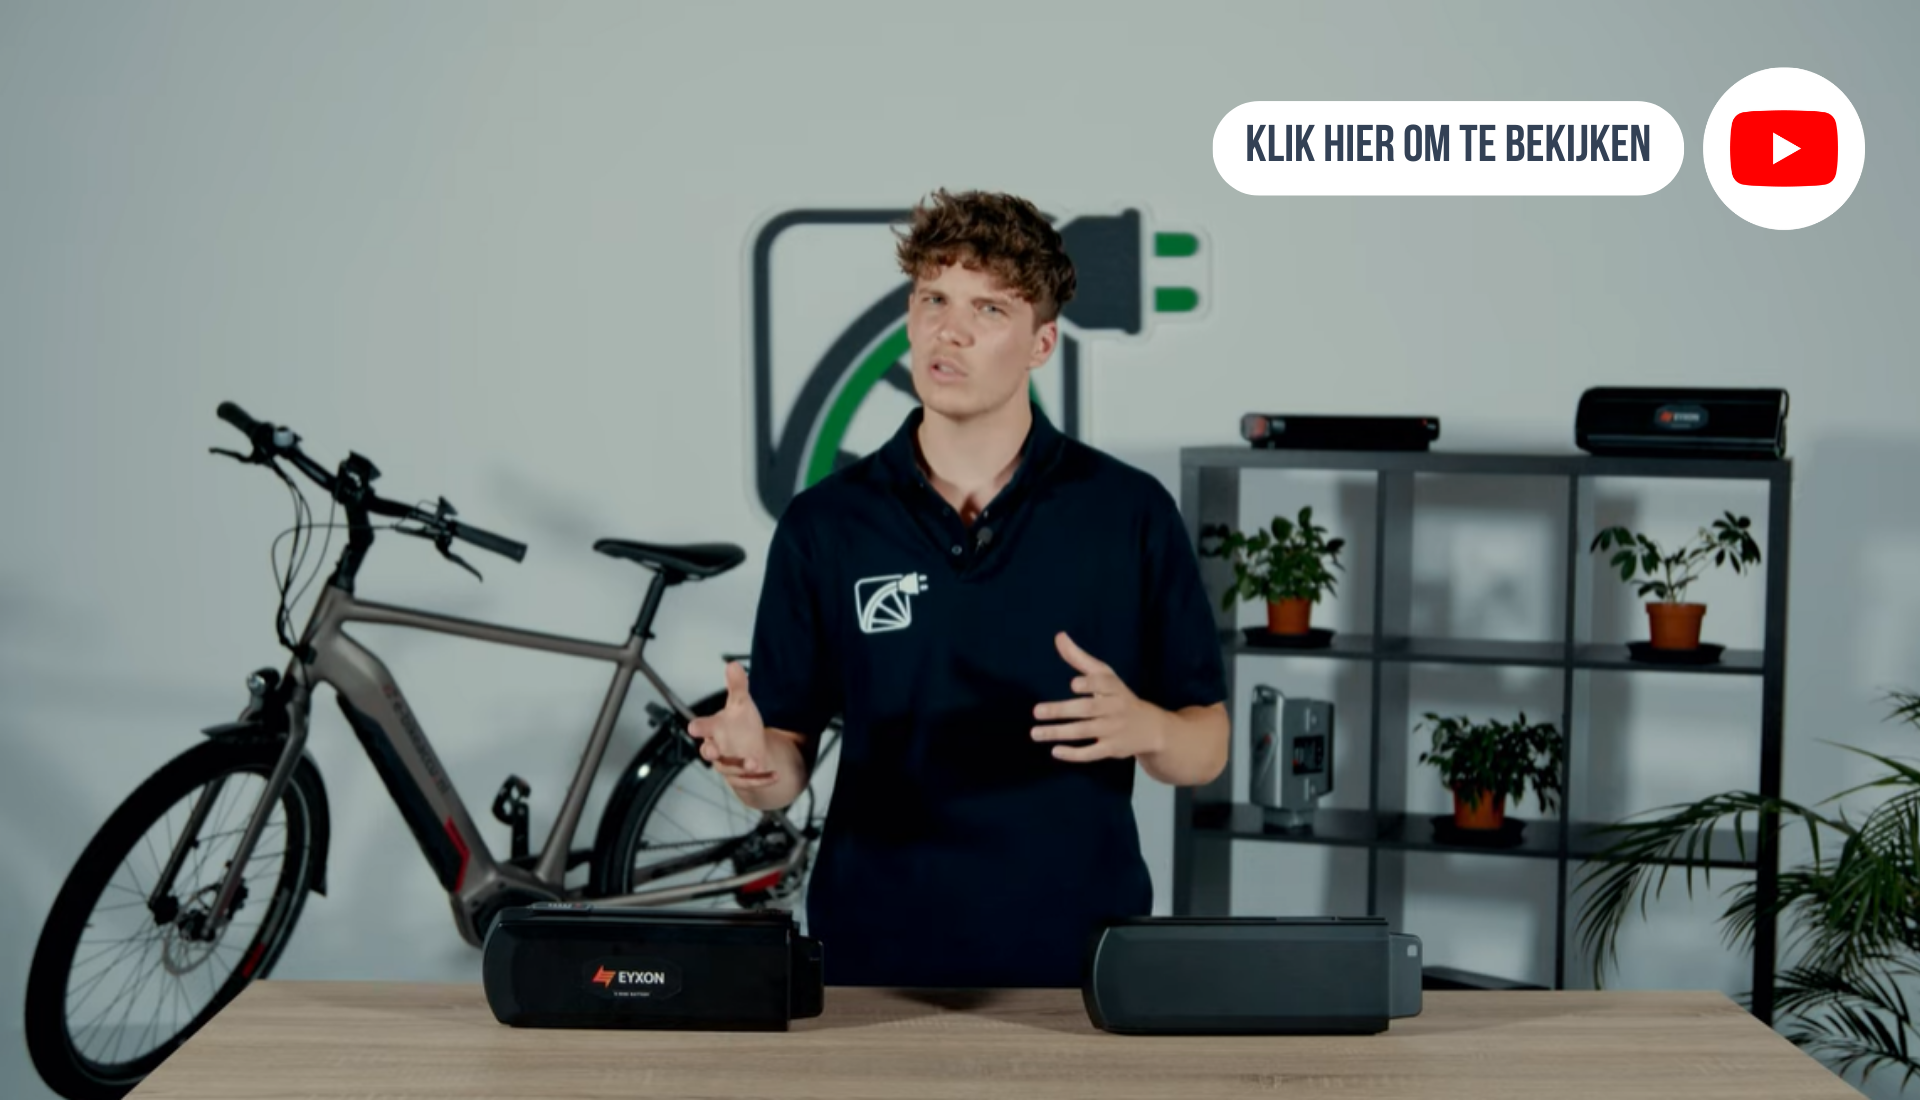 Esta imagen enlaza con un vídeo de YouTube. Este vídeo explica la diferencia entre las baterías de bicicleta originales y las baterías de bicicleta compatibles.